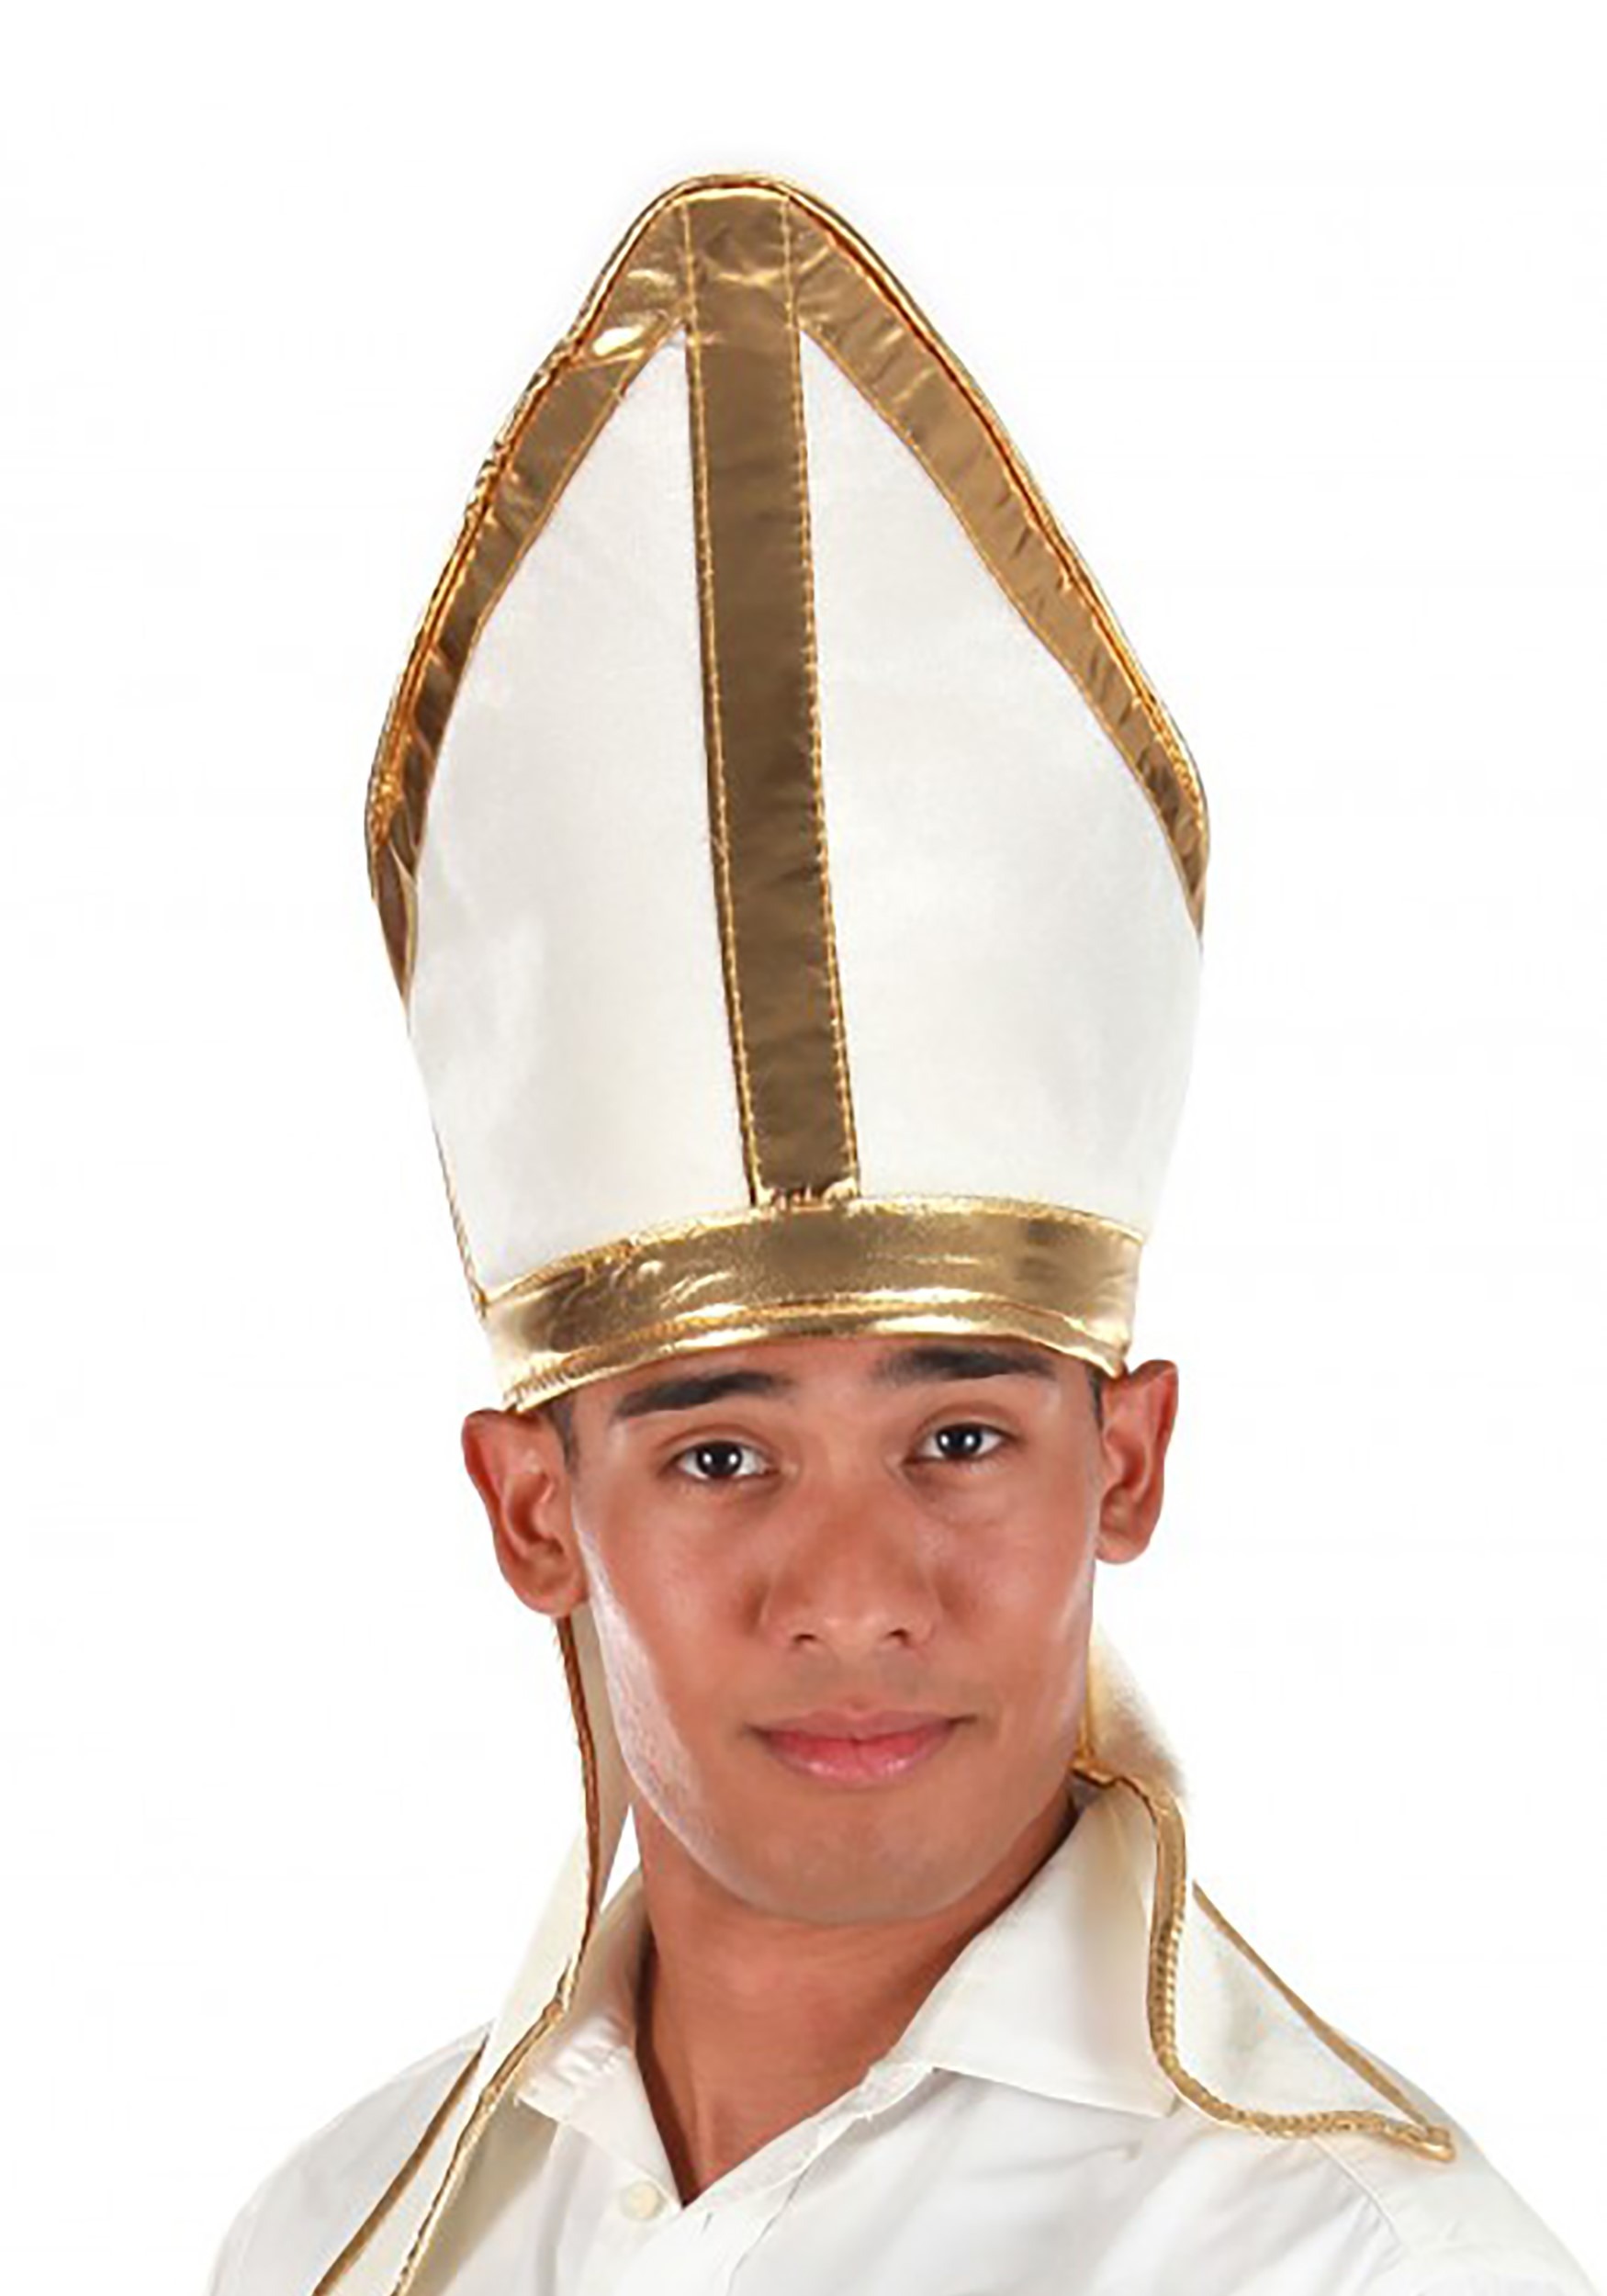 Pope Plush Costume Hat